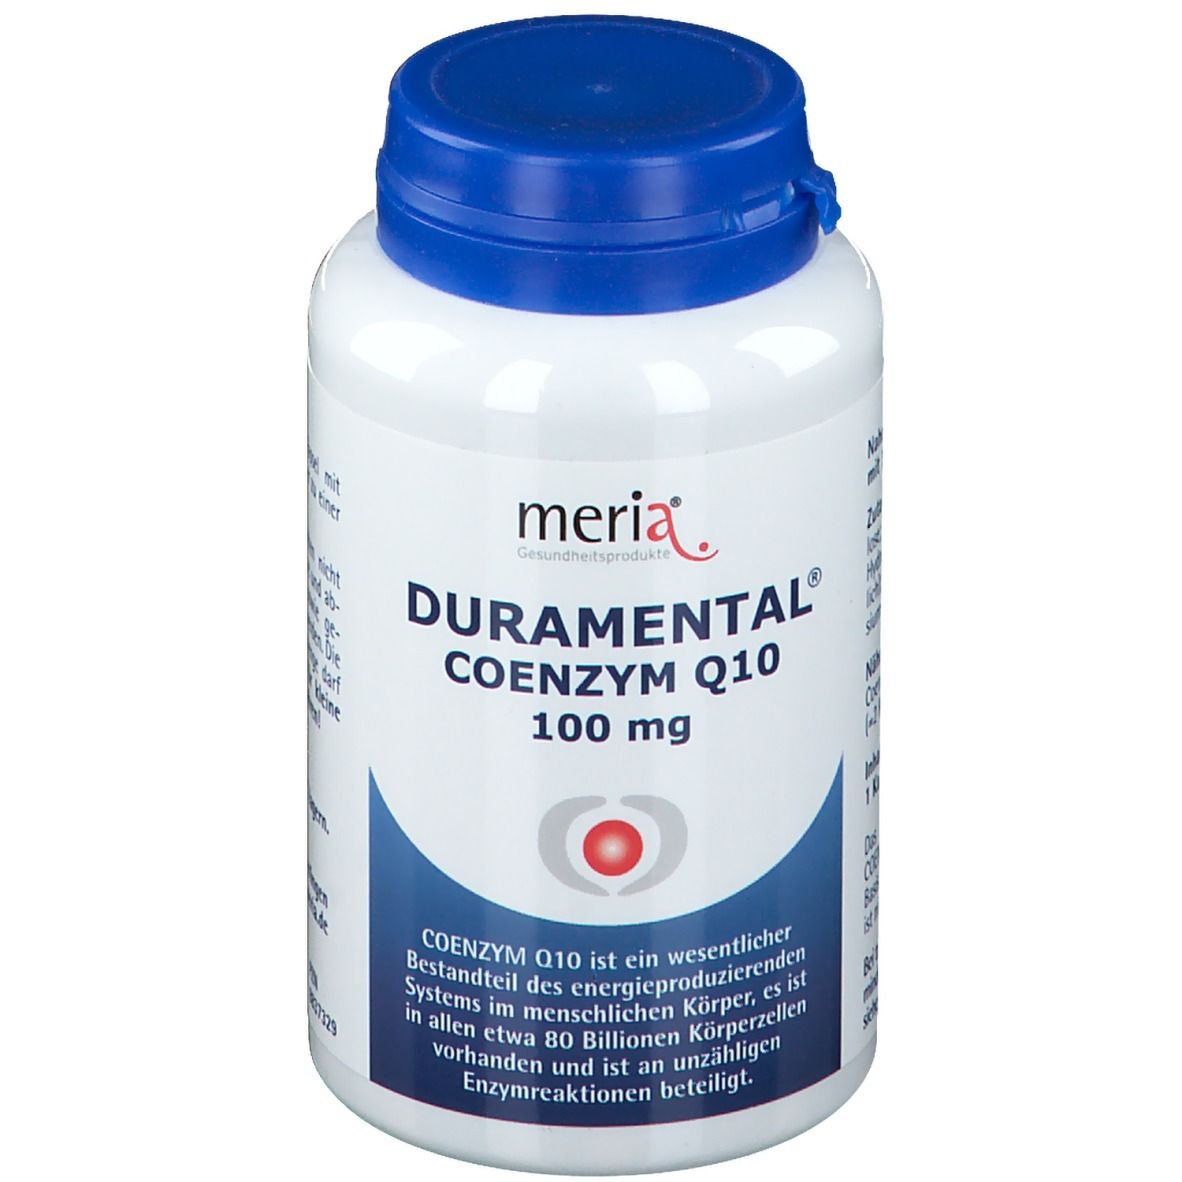 Duramental® Coenzym Q10